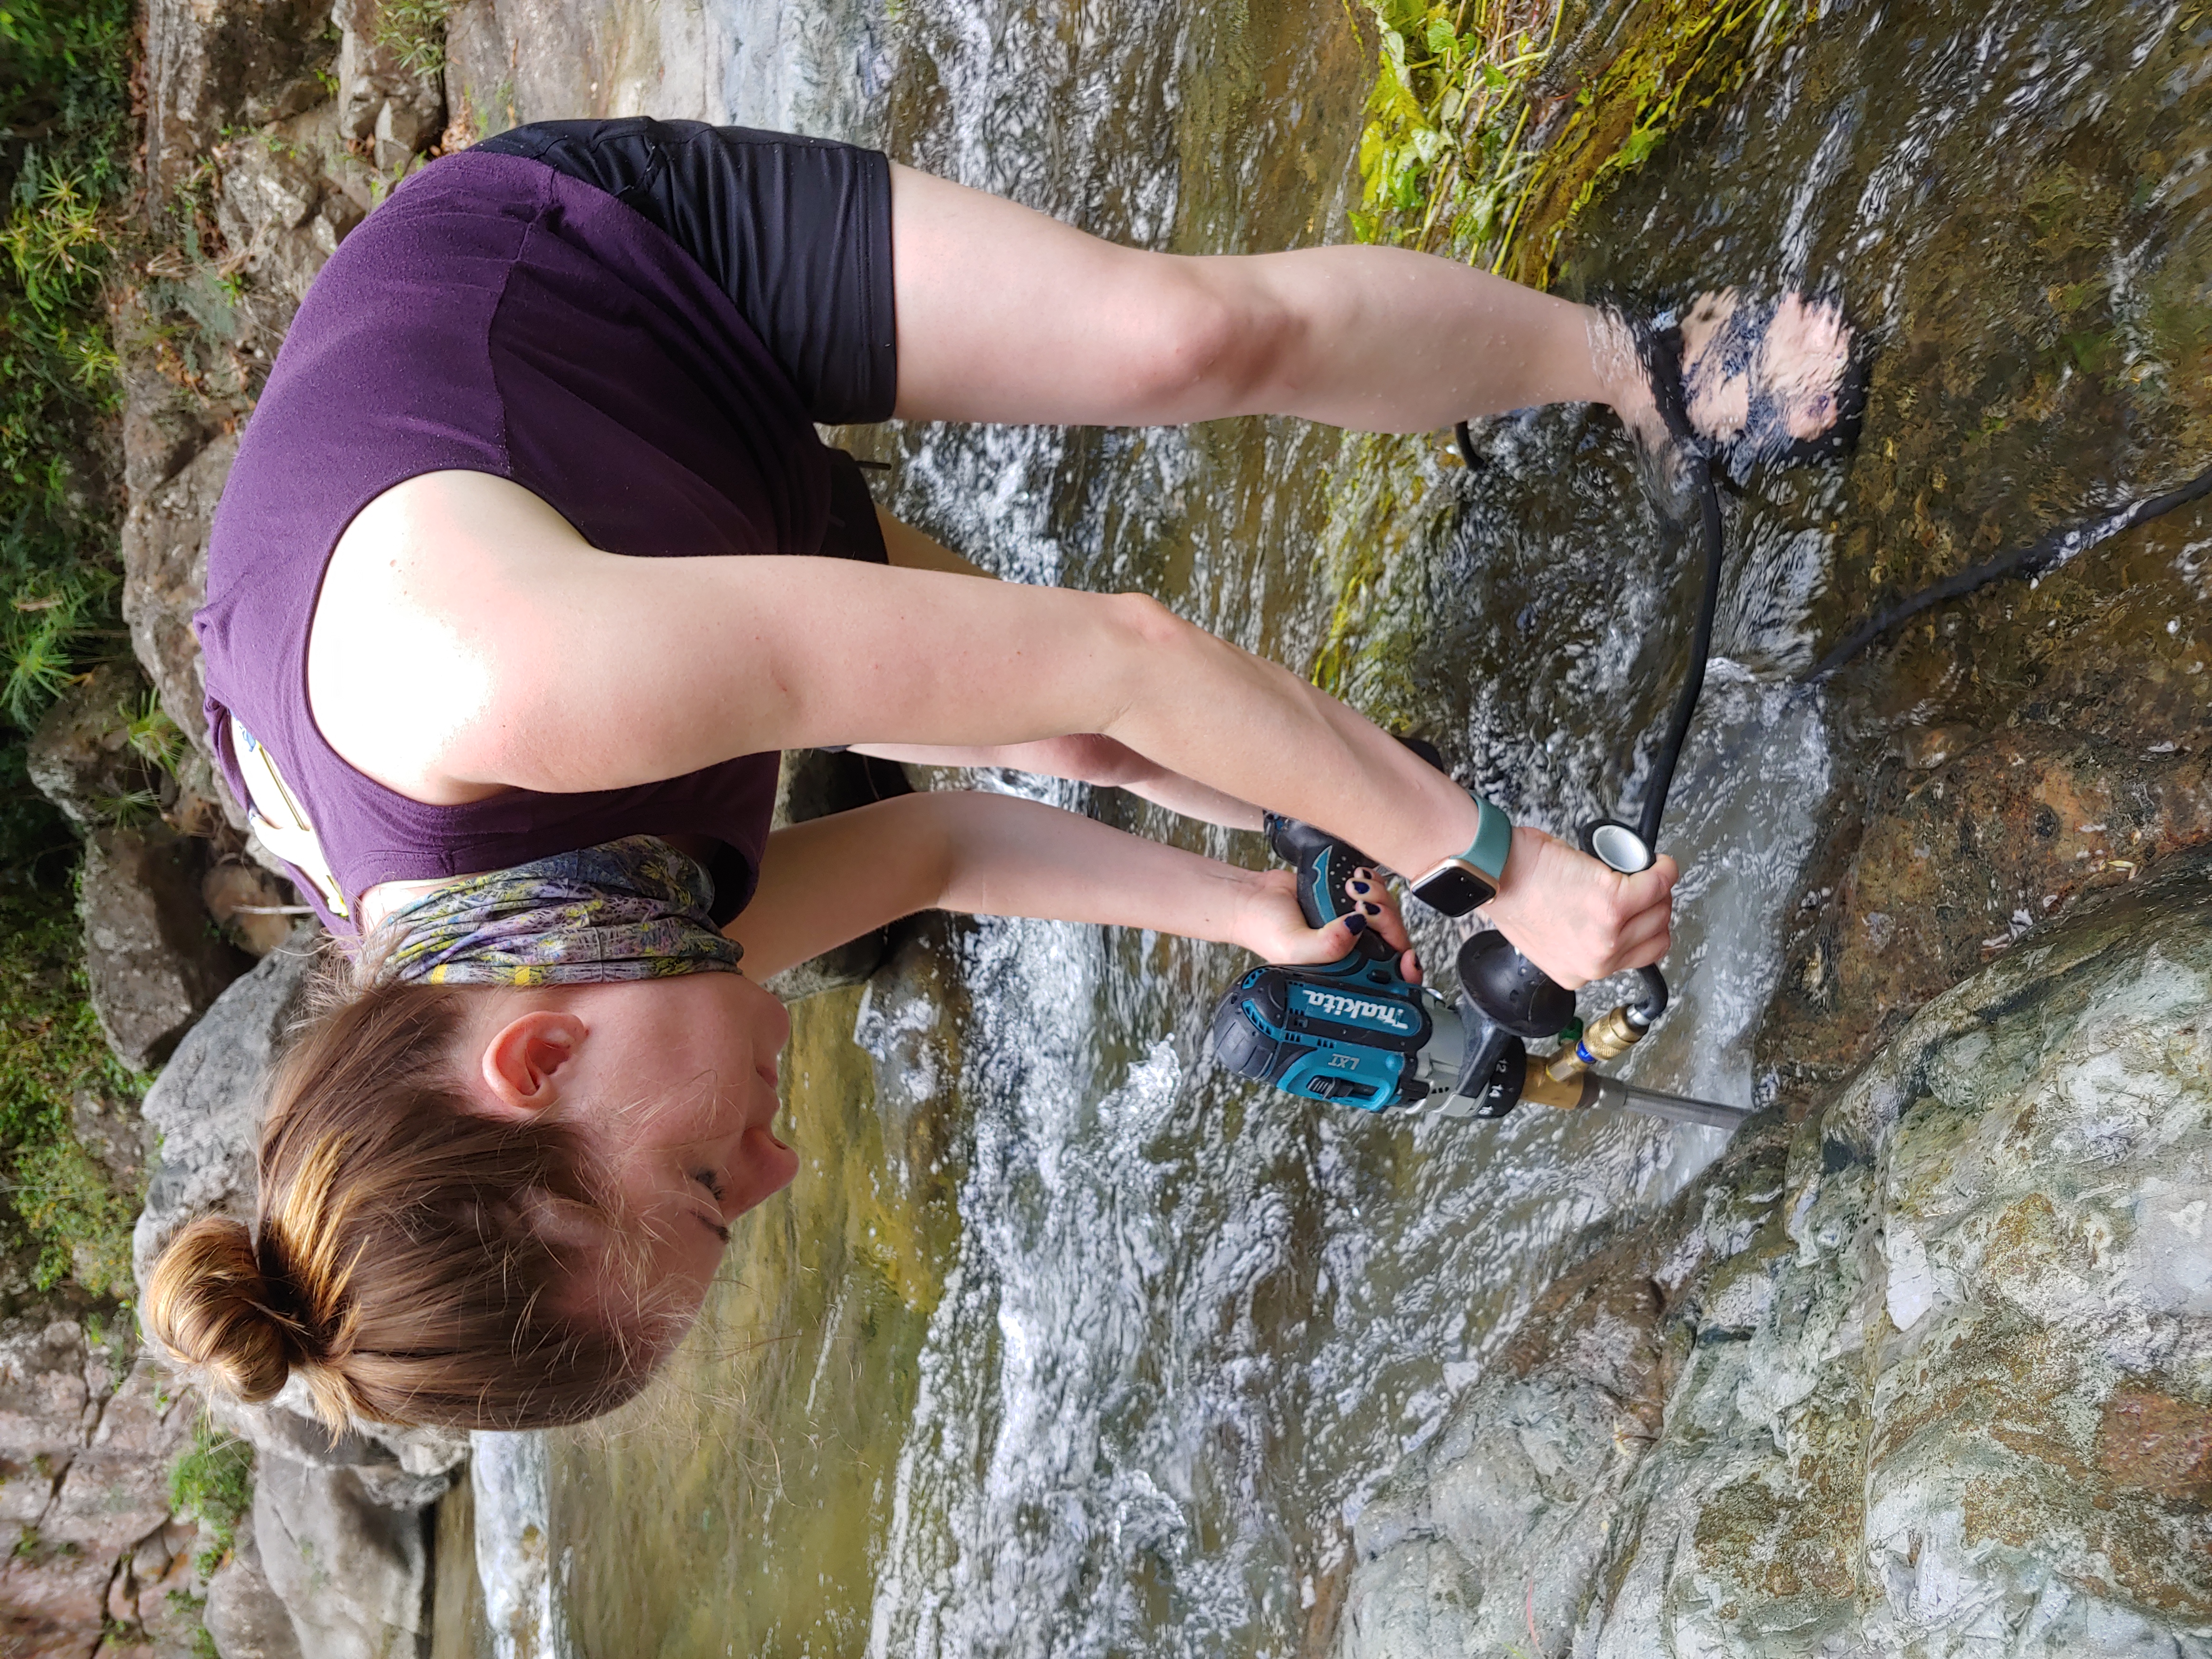 Laura Bilenker samples rocks at the Tibes iron deposit.